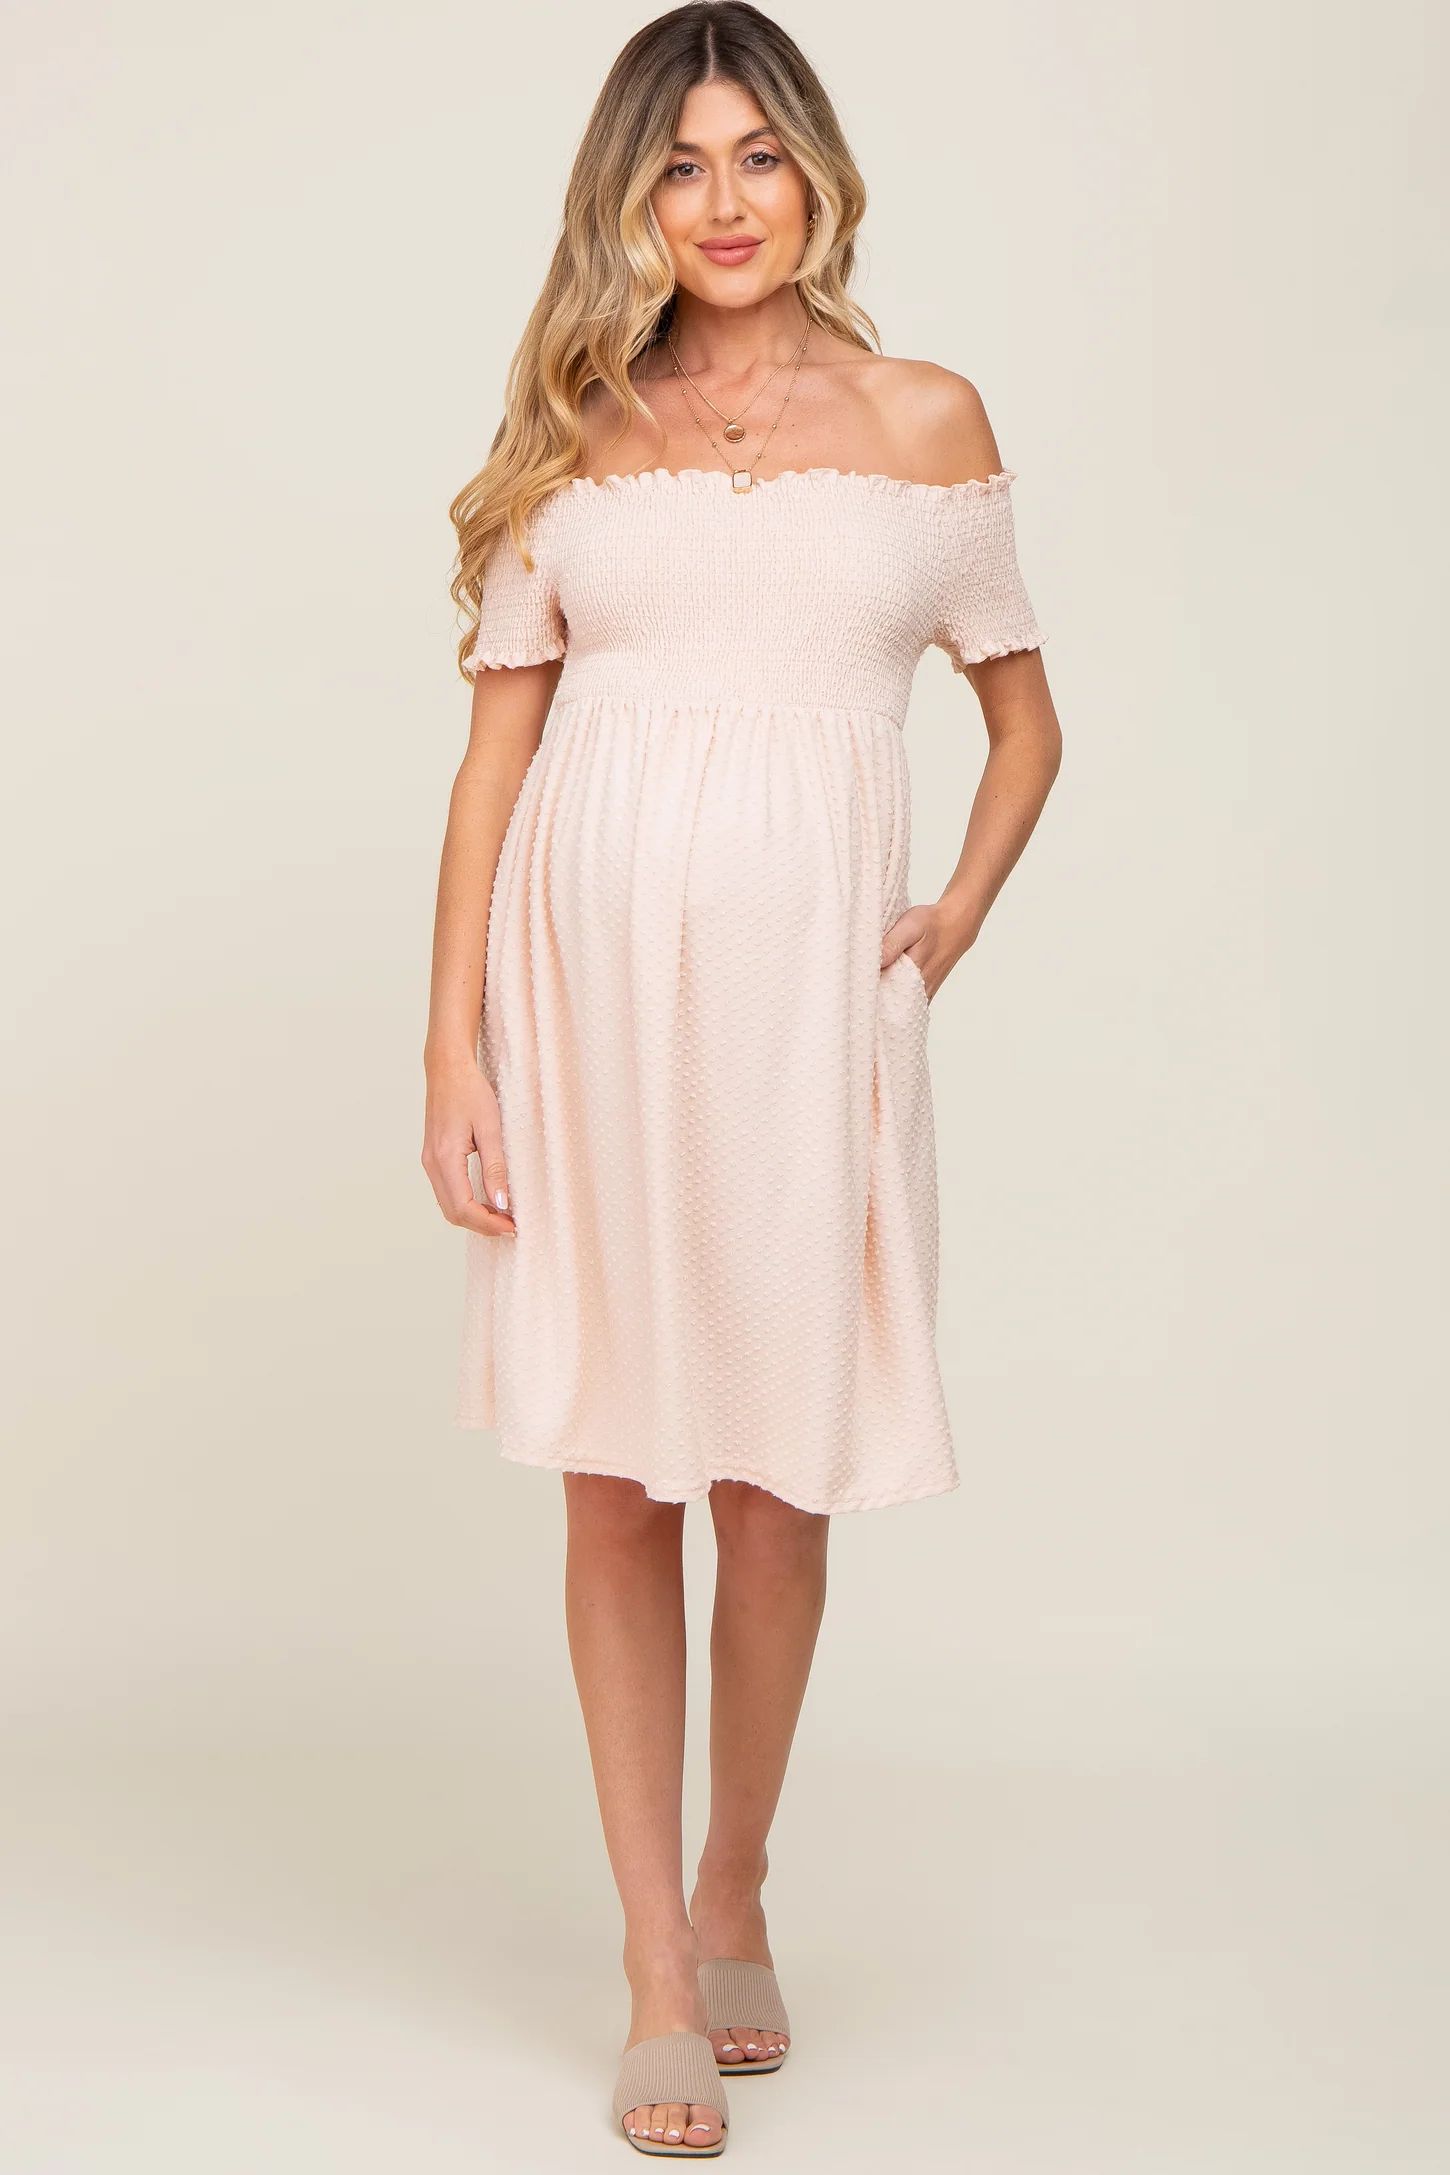 Peach Swiss Dot Off Shoulder Maternity Dress | PinkBlush Maternity